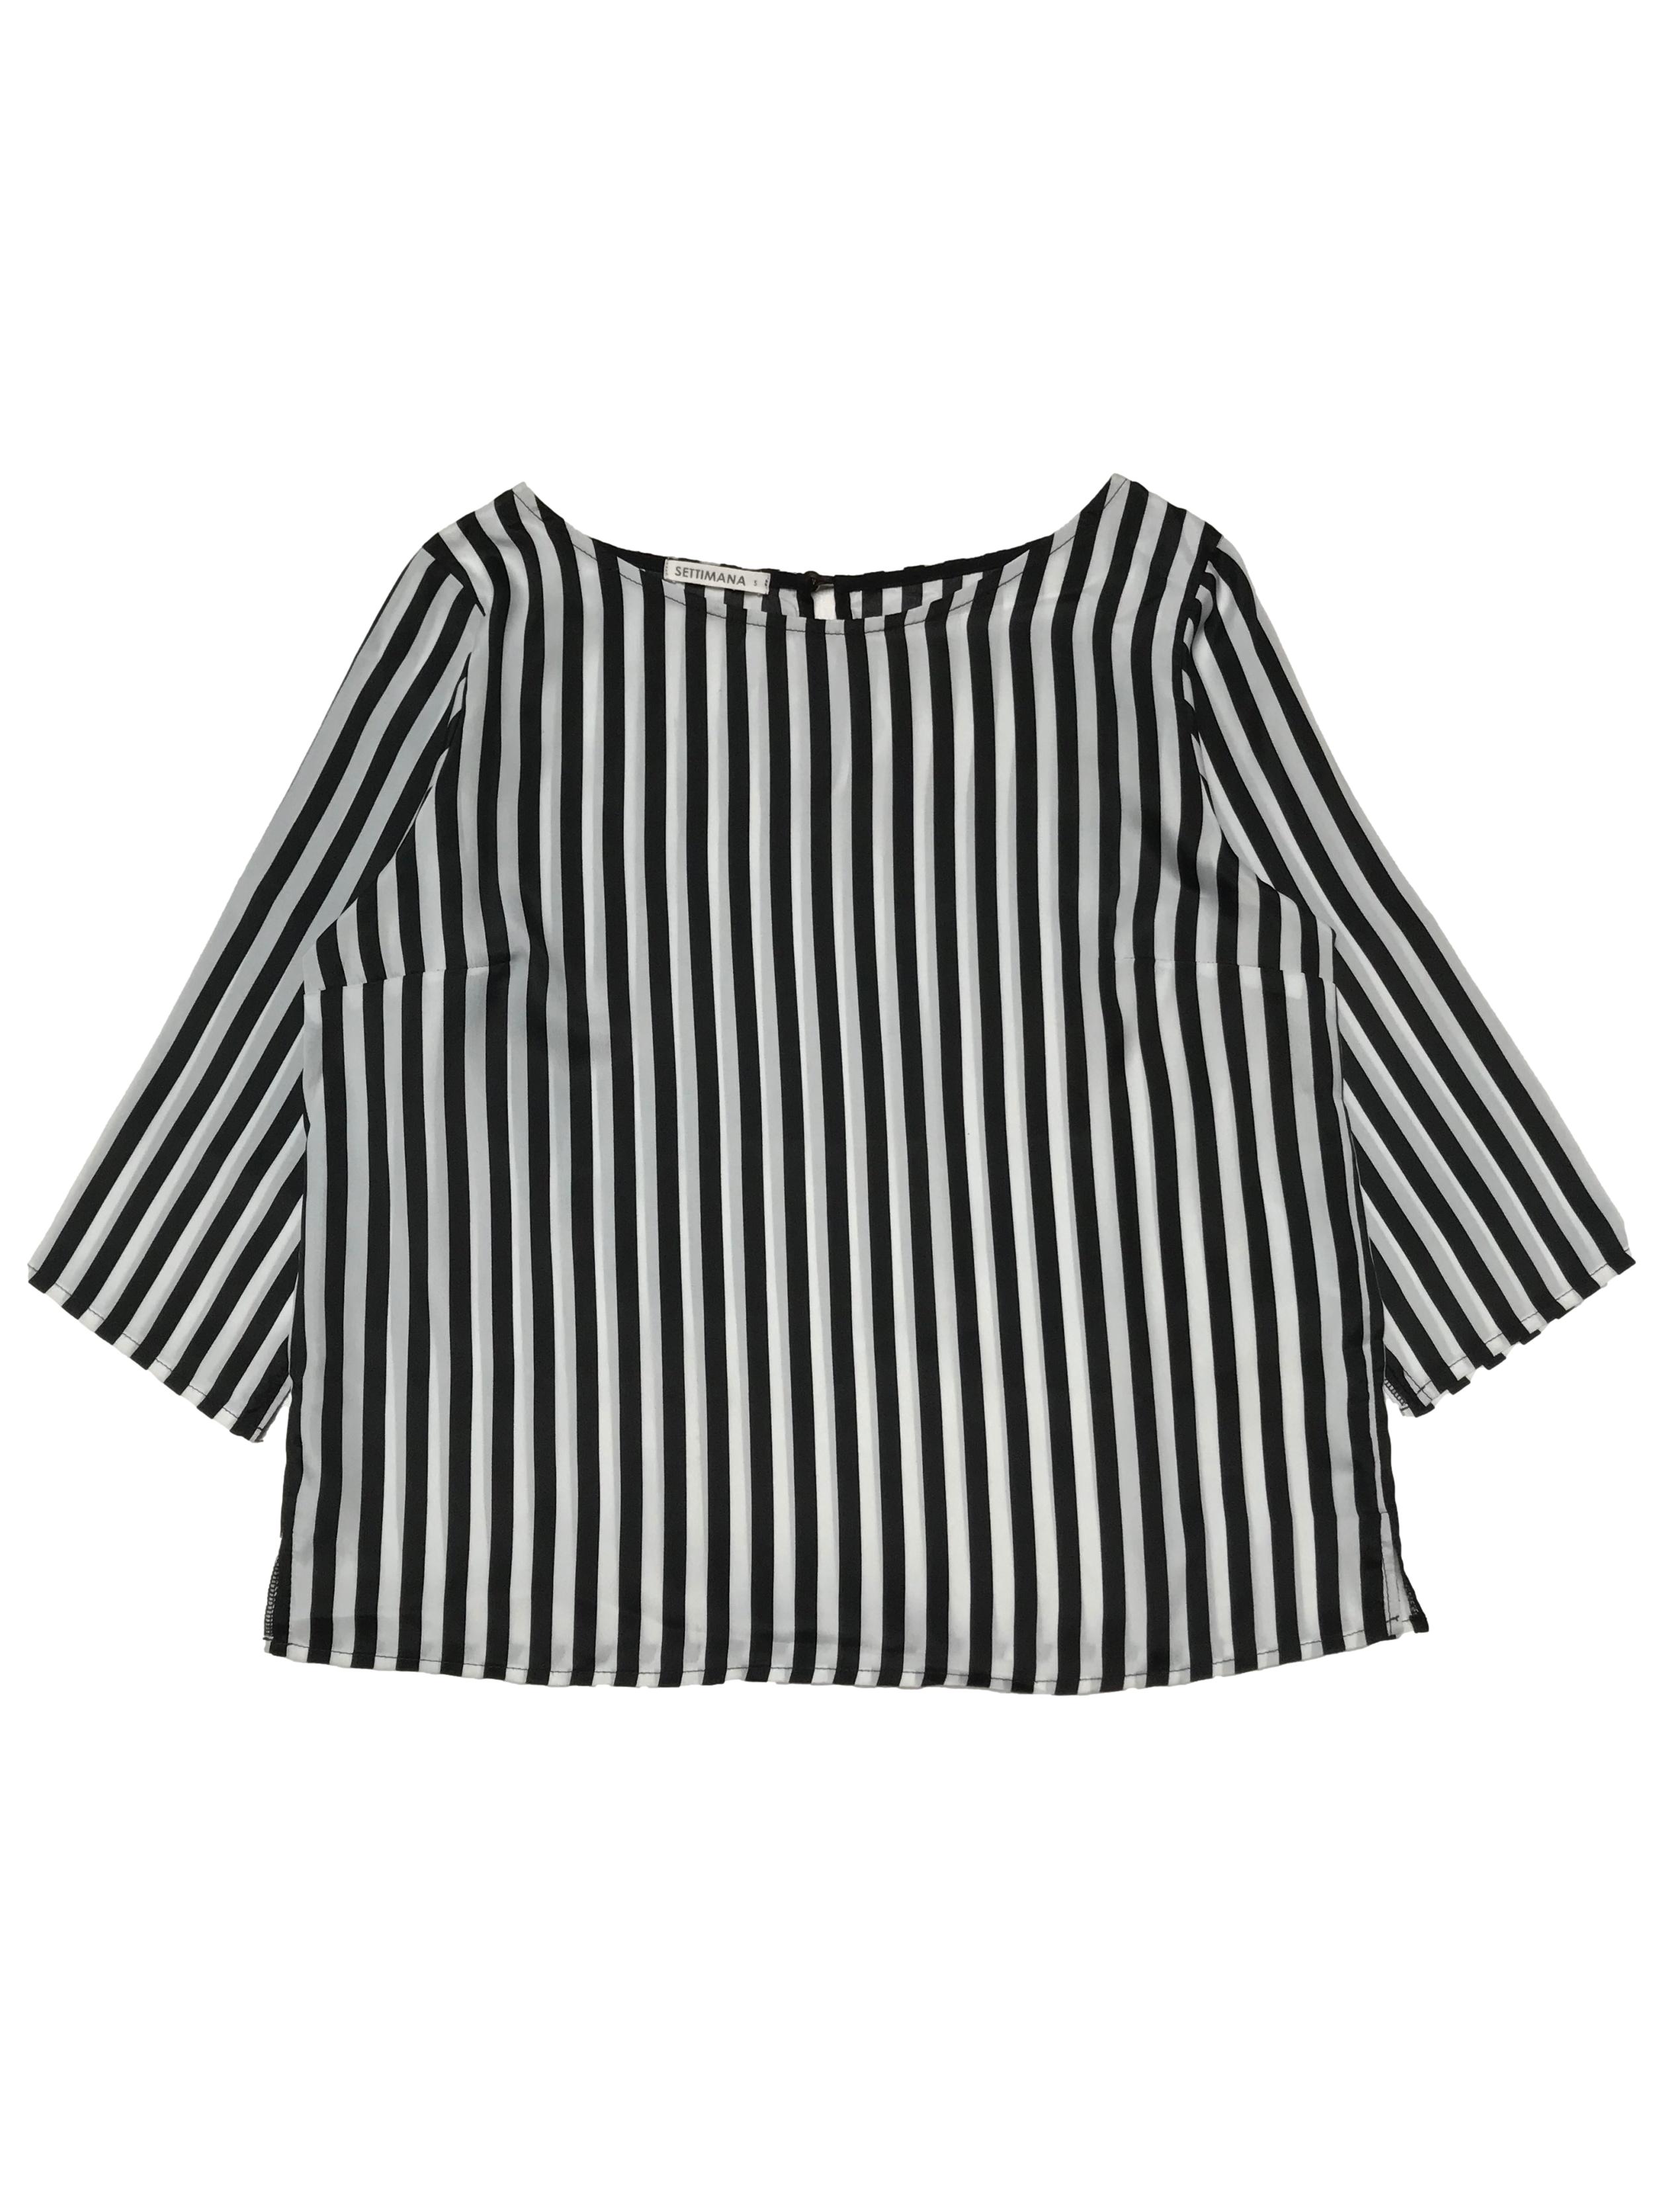 Blusa Settimana a rayas blancas y negras, manga 3/4, cuello con botón posterior. Ancho 98cm Largo 55cm